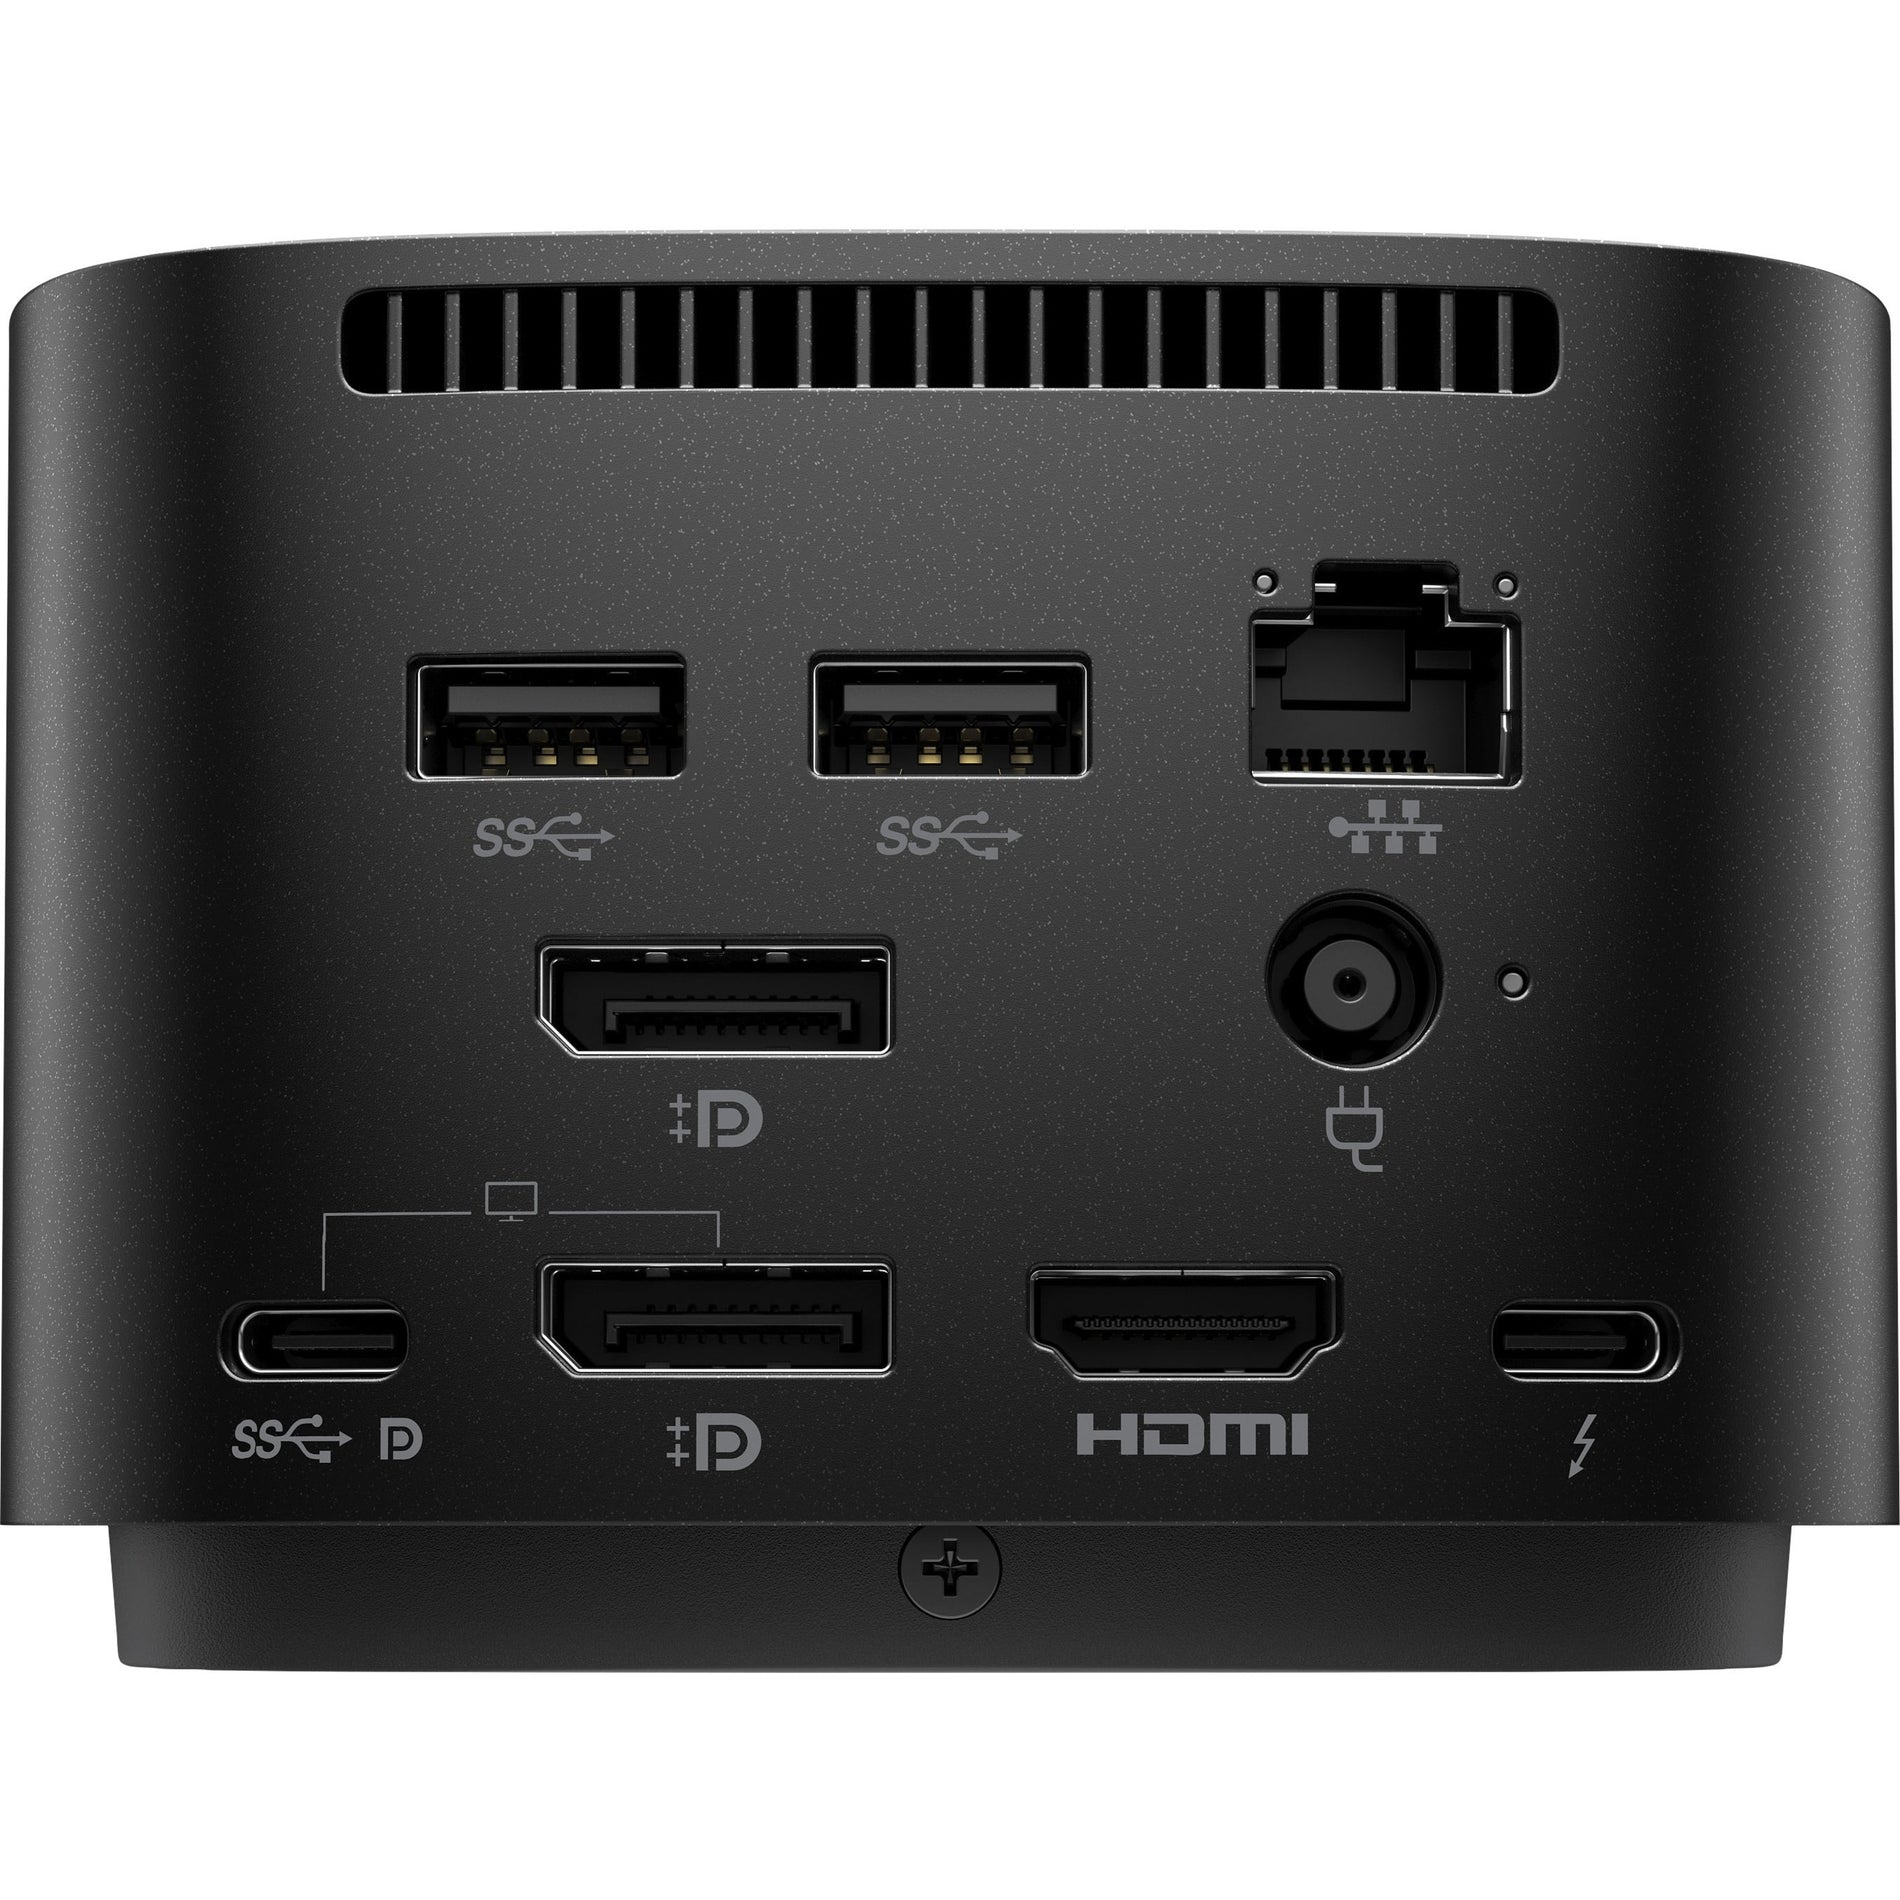 Marca: HP Base de Conexión Thunderbolt 120W G4 Pantalla 4K USB-C HDMI Ethernet